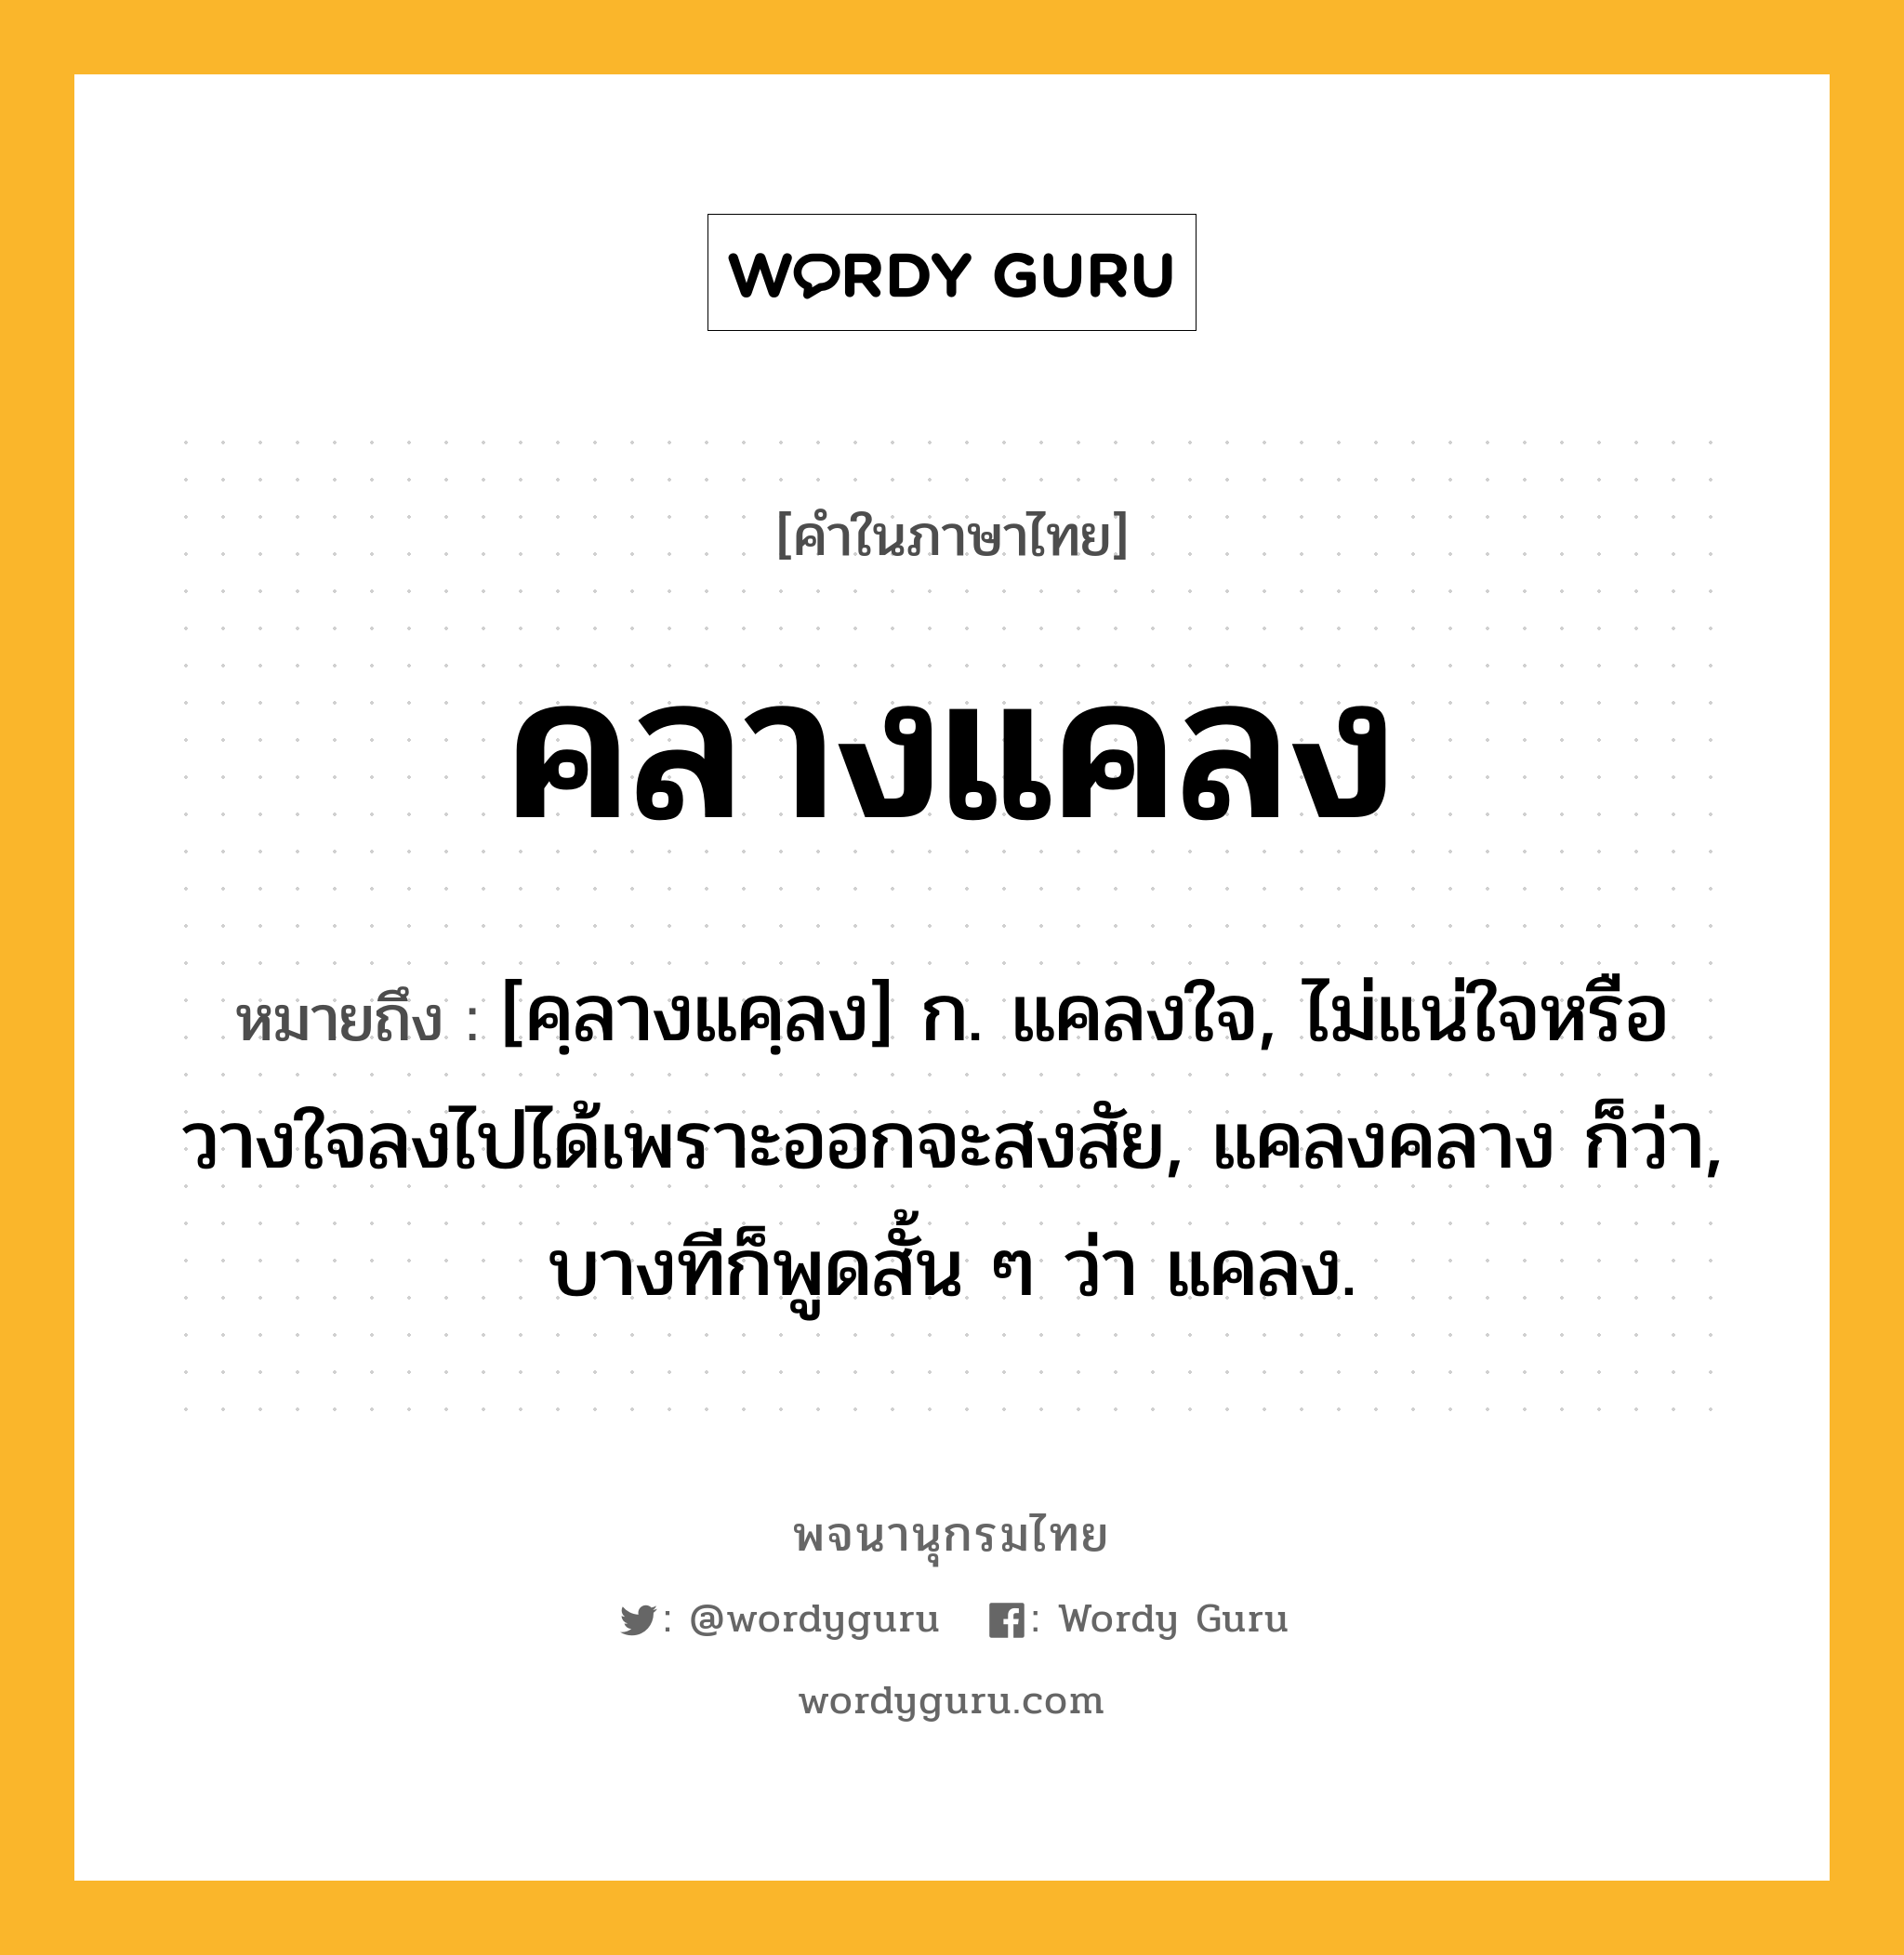 คลางแคลง หมายถึงอะไร?, คำในภาษาไทย คลางแคลง หมายถึง [คฺลางแคฺลง] ก. แคลงใจ, ไม่แน่ใจหรือวางใจลงไปได้เพราะออกจะสงสัย, แคลงคลาง ก็ว่า, บางทีก็พูดสั้น ๆ ว่า แคลง.